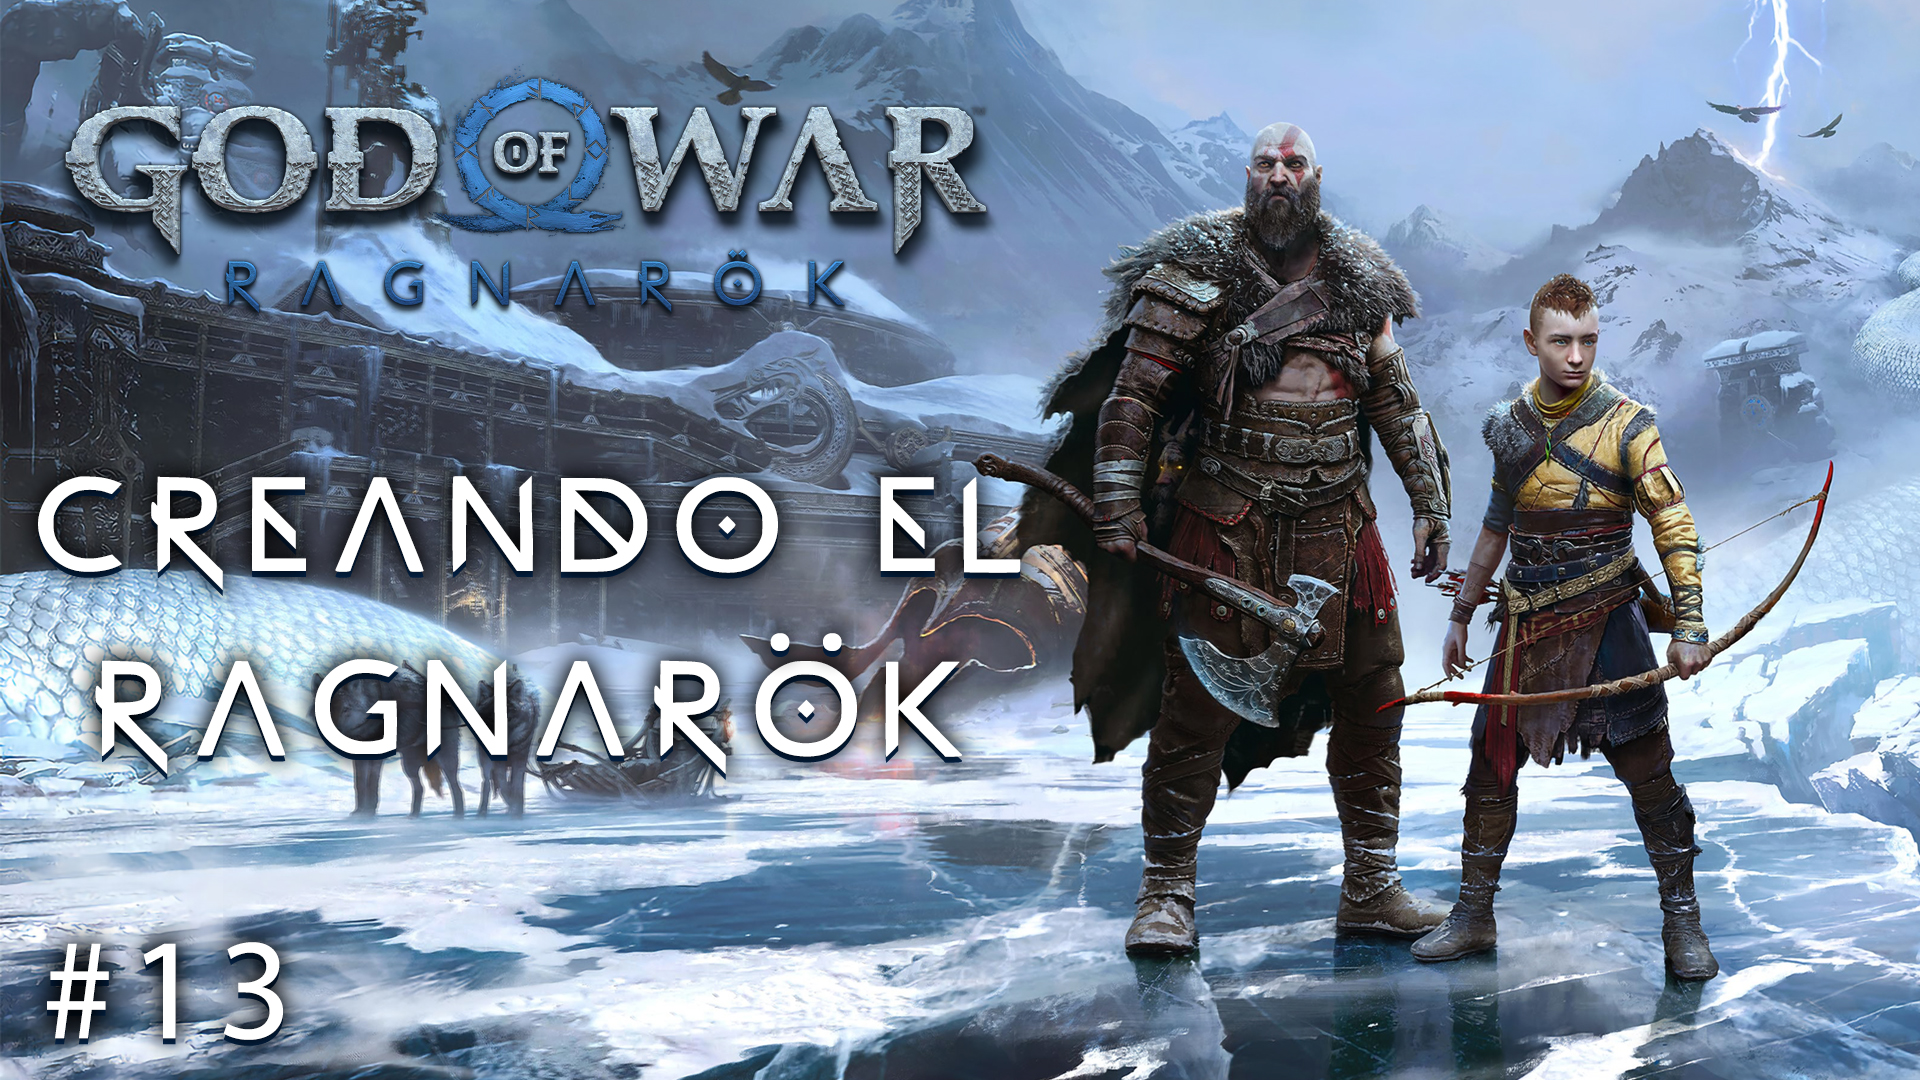 Serie God of War Ragnarök #13 – Creando el Ragnarök